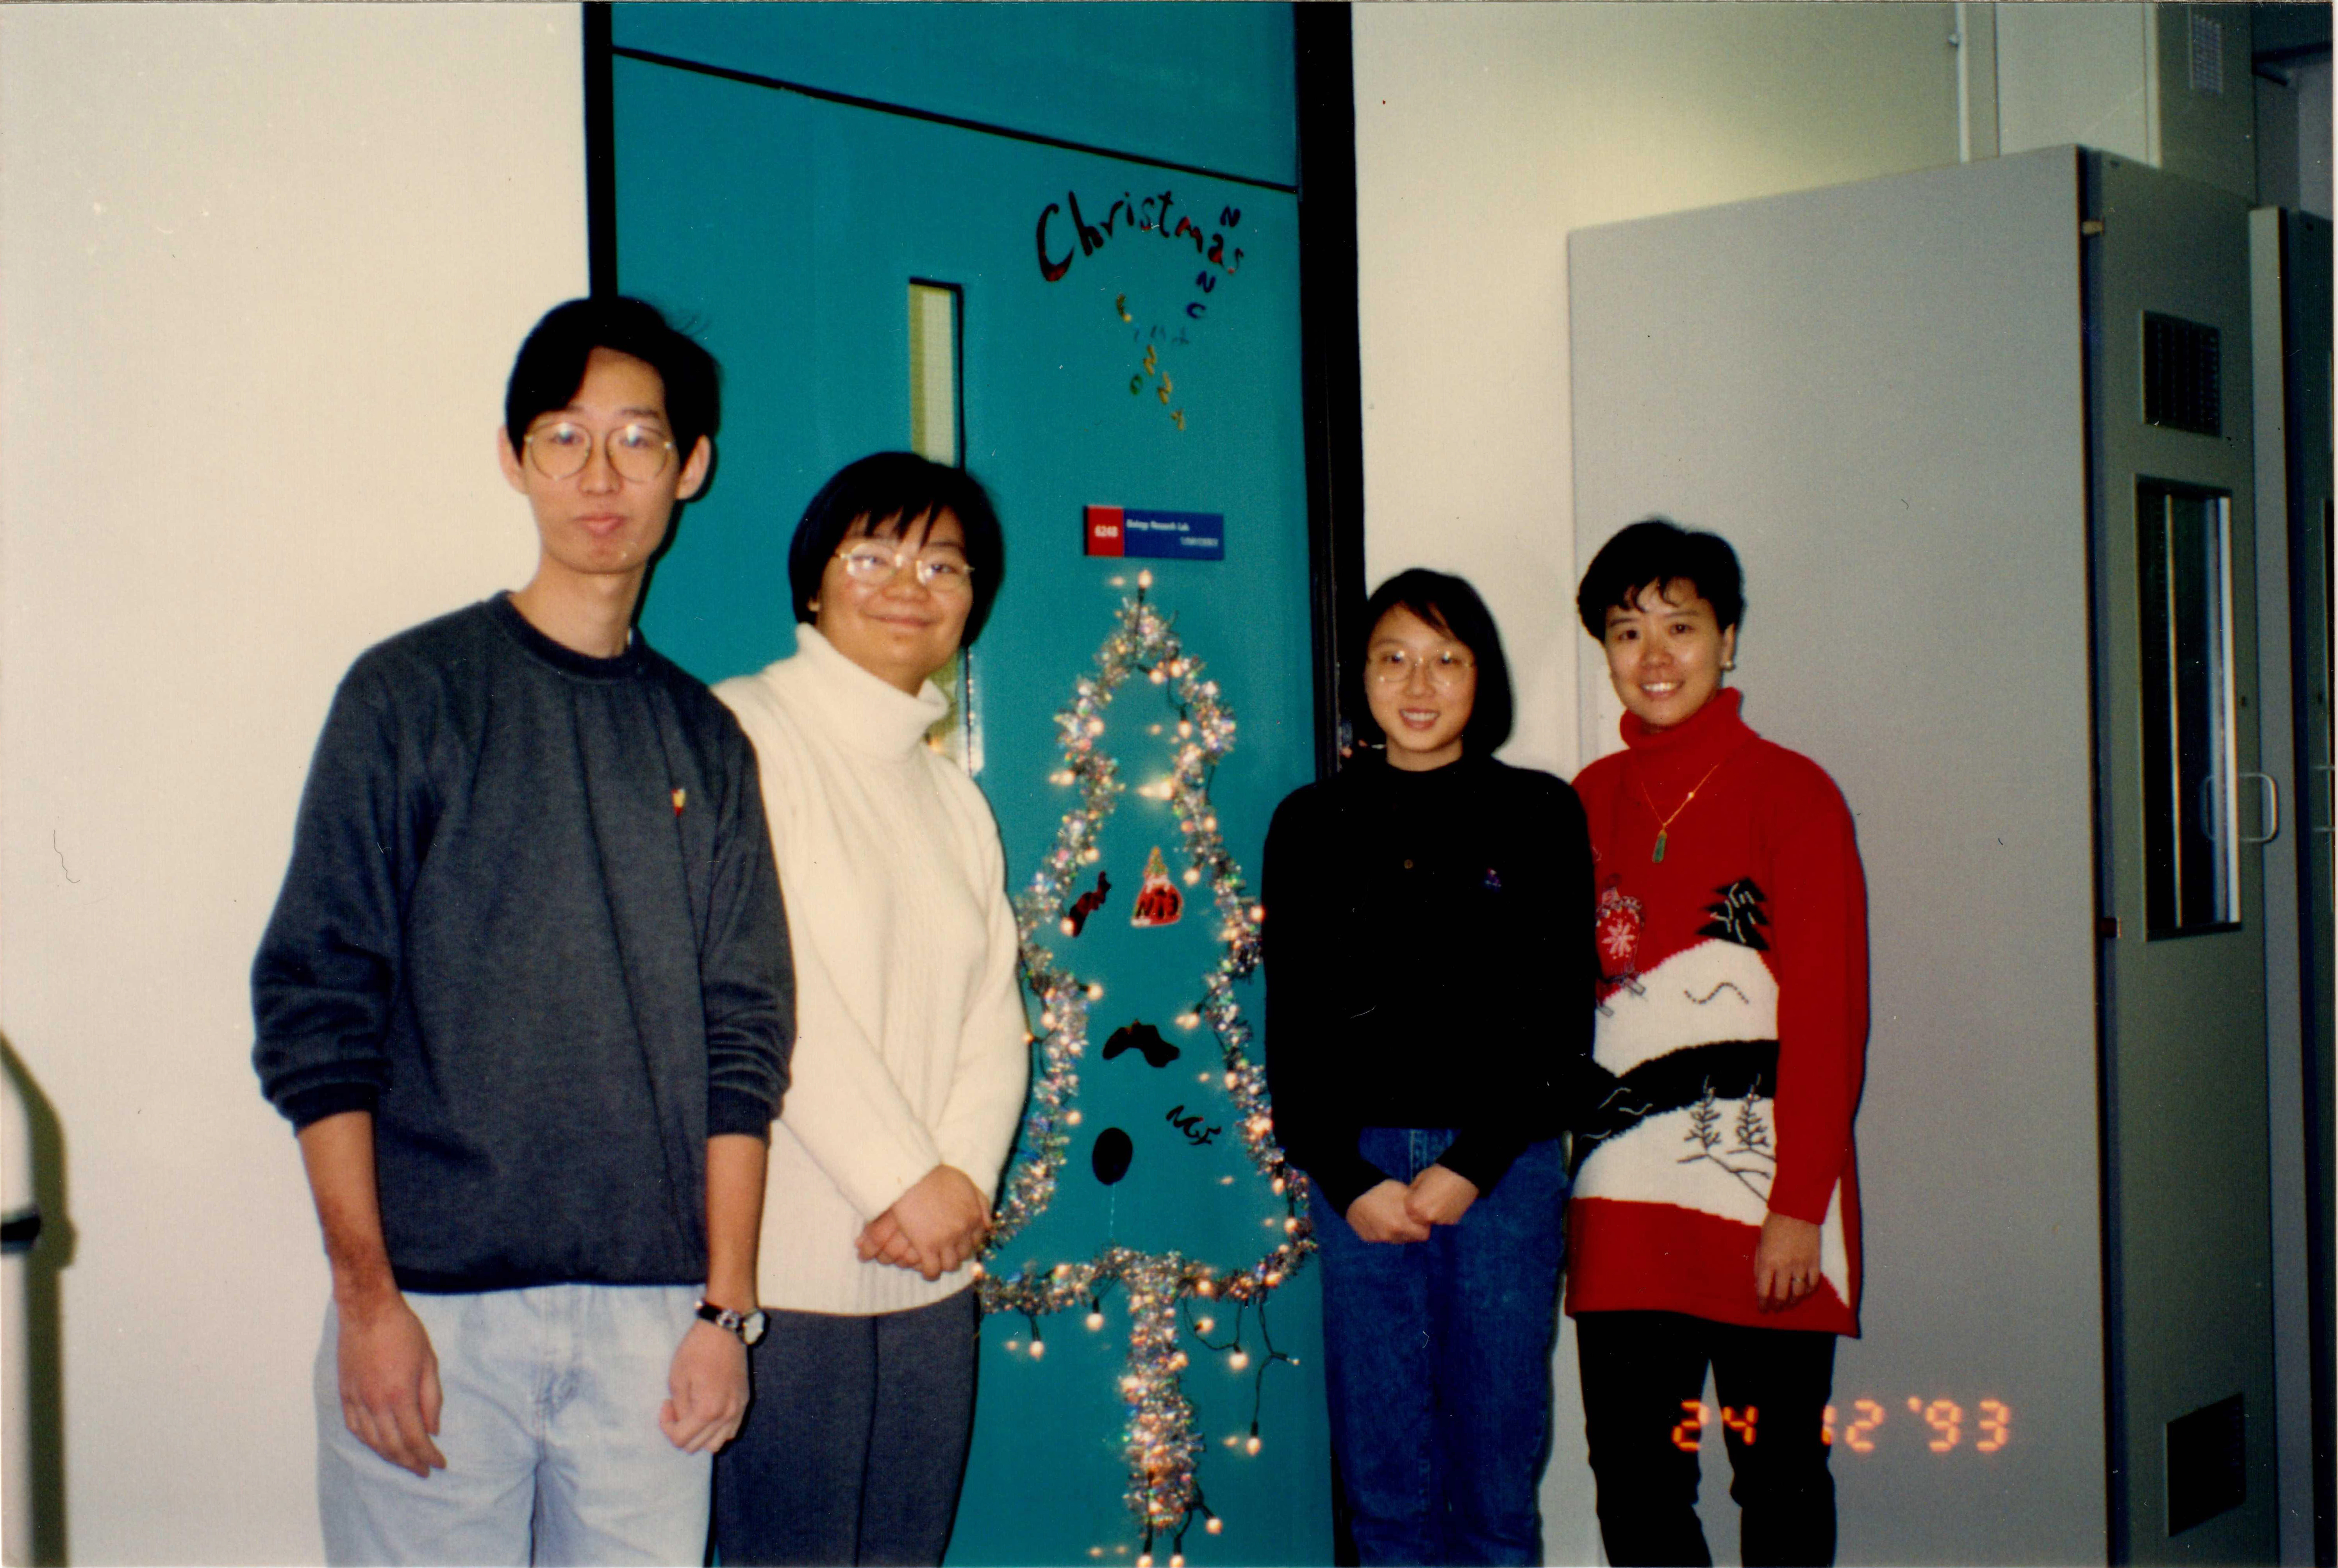 葉教授(右一)於1993年在她的實驗室門前與研究團隊成員合照，慶祝首個在科大度過的聖誕節，部分成員至今仍為葉教授的緊密戰友。